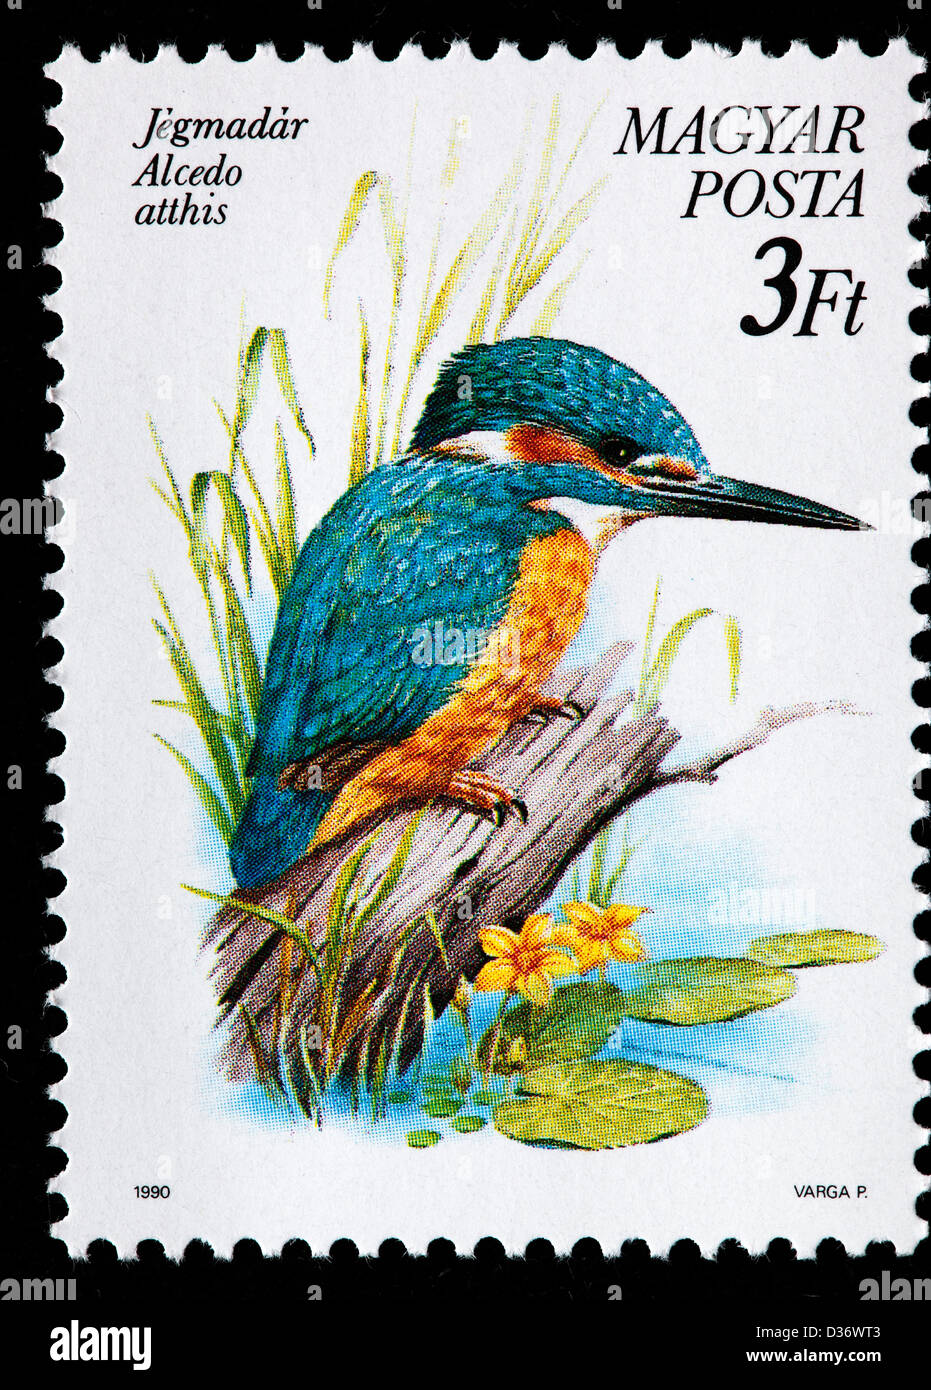 Eurasische Eisvogel oder Fluss Eisvogel (Alcedo Atthis), Briefmarke, Ungarn, 1990 Stockfoto